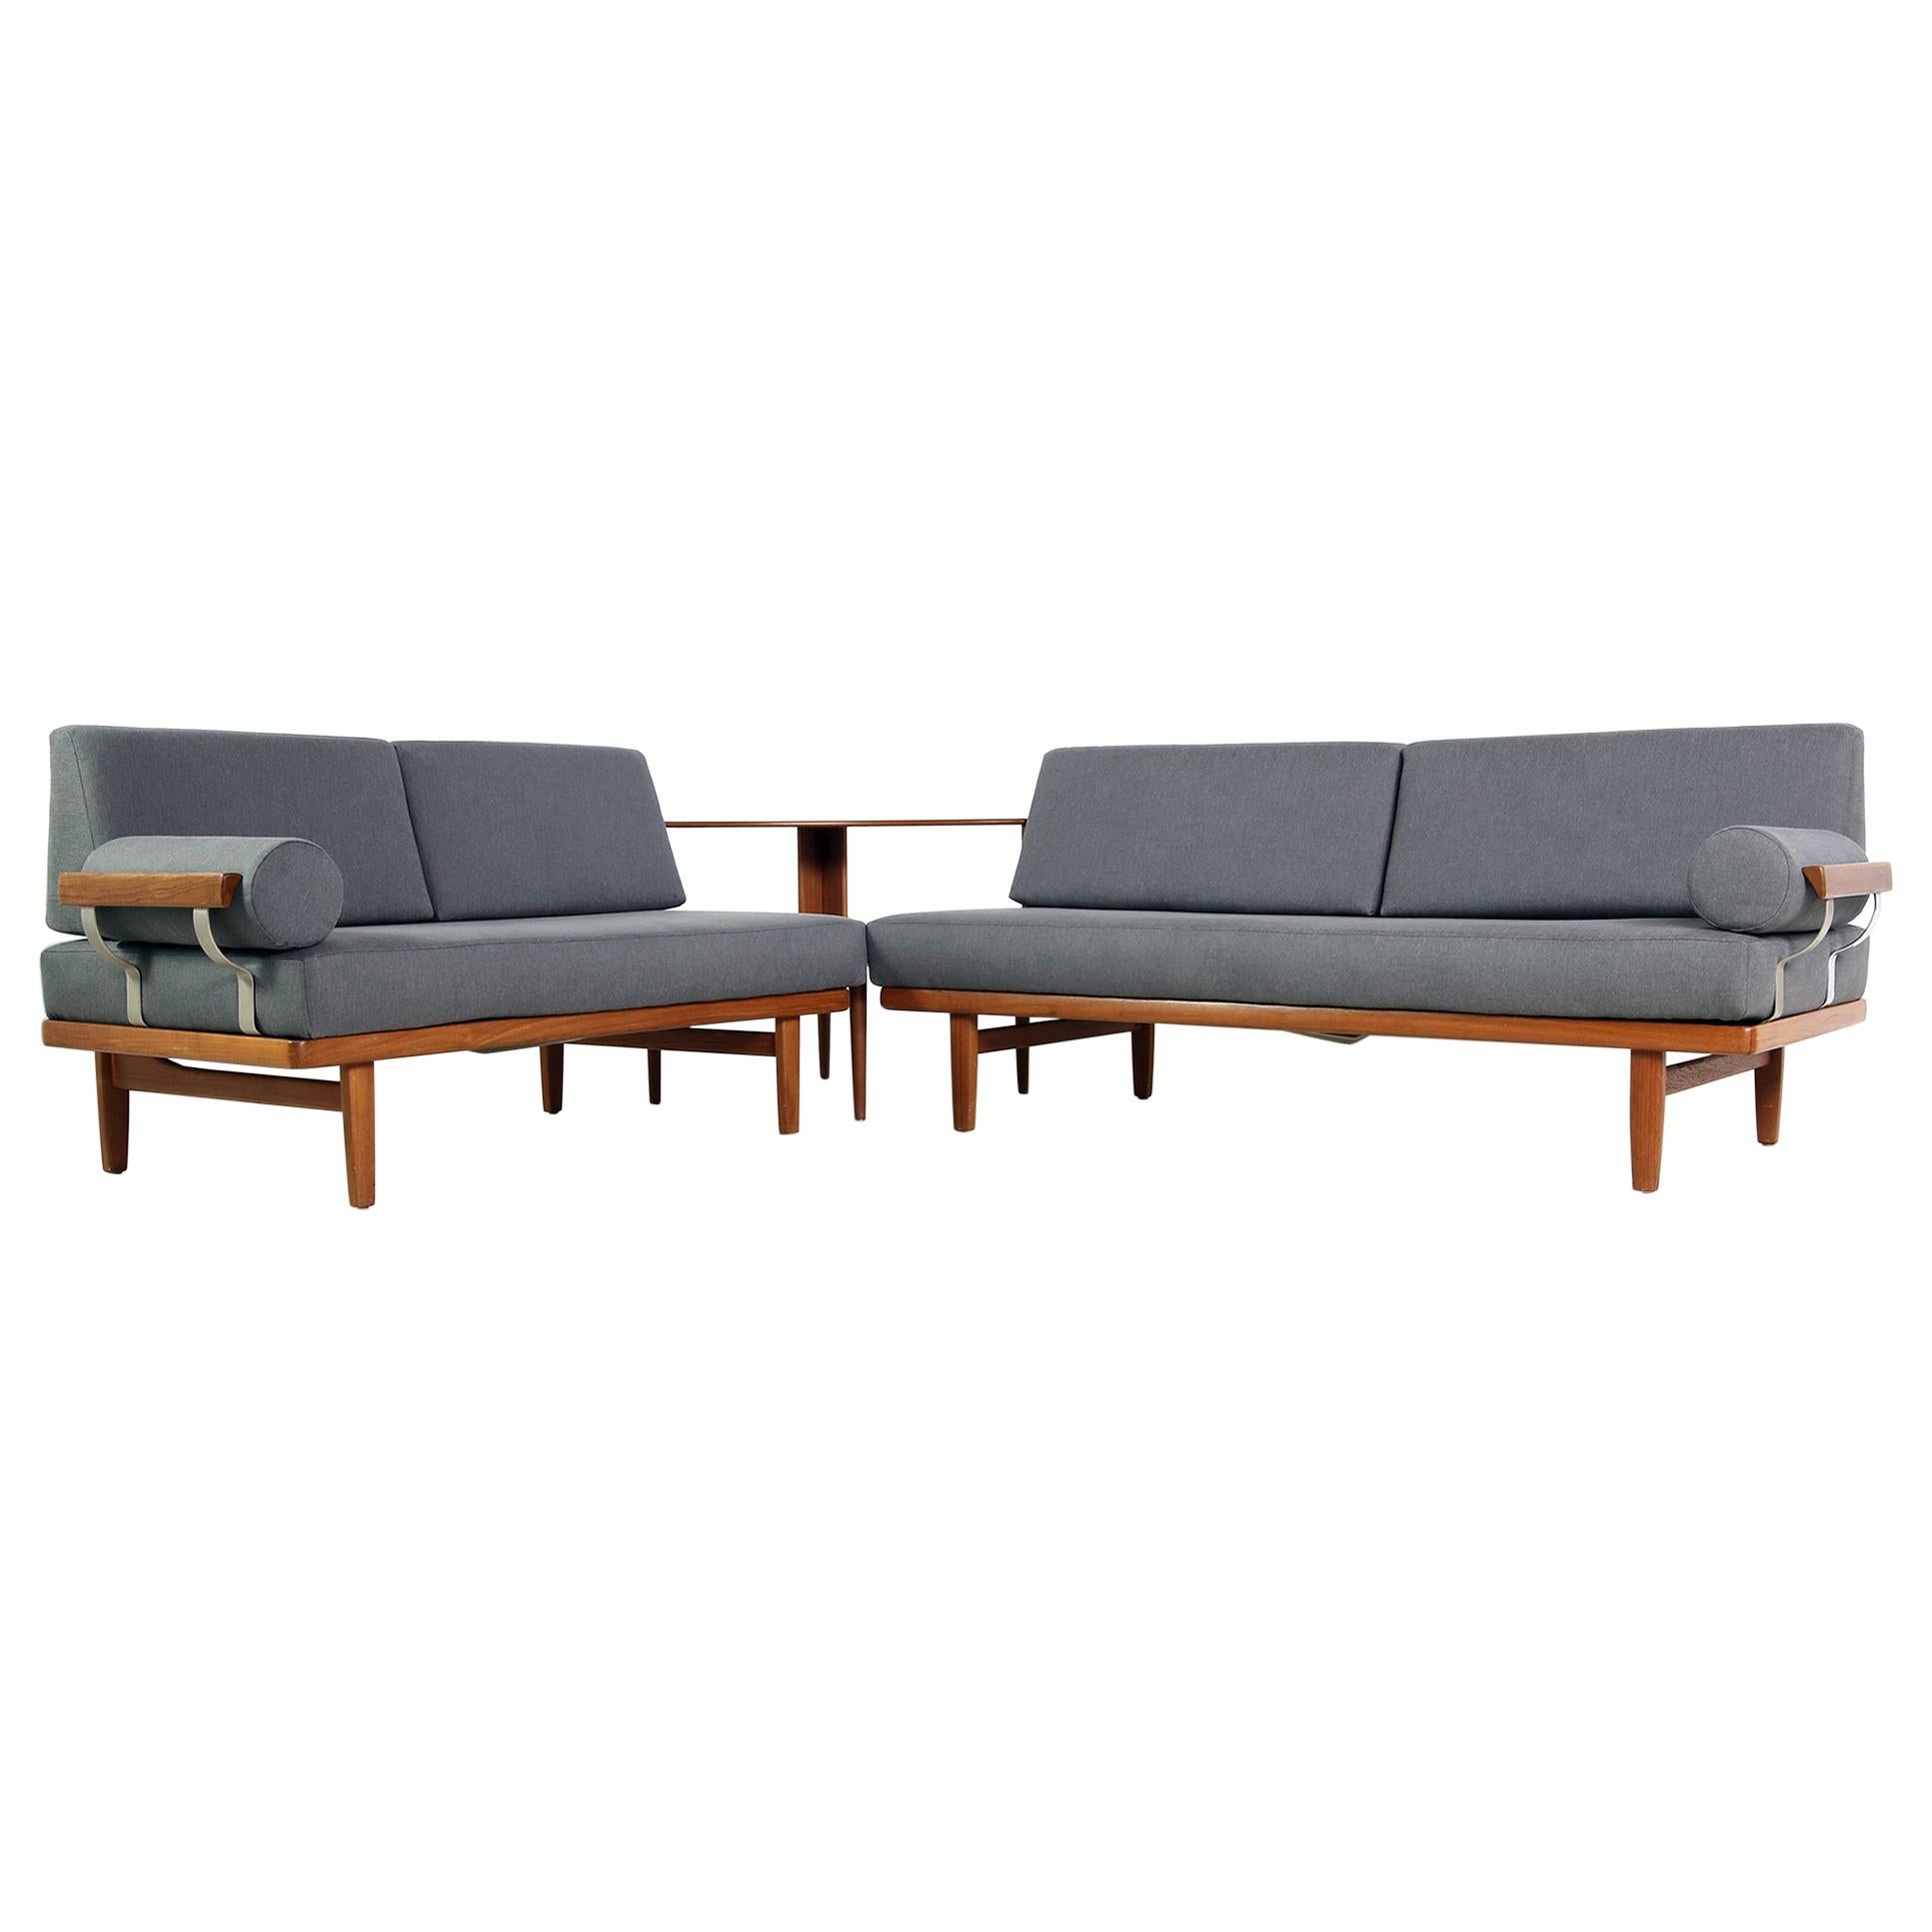 1960s Teak Daybed Sofa Set with Side Table Svensson & Sandstrom Danish Modern